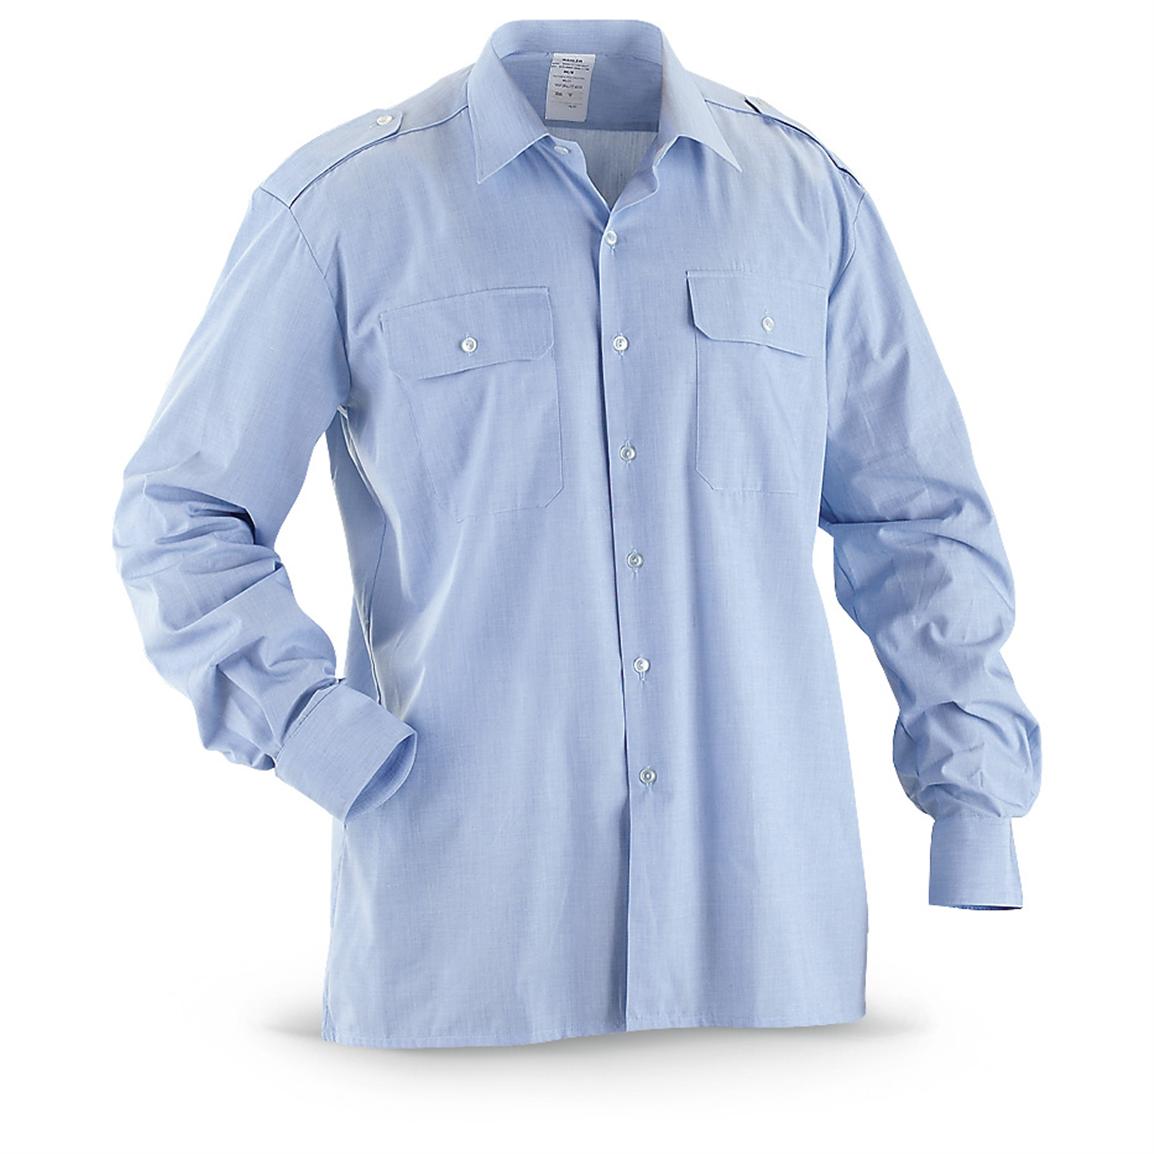 Light Blue Uniform Shirt 99